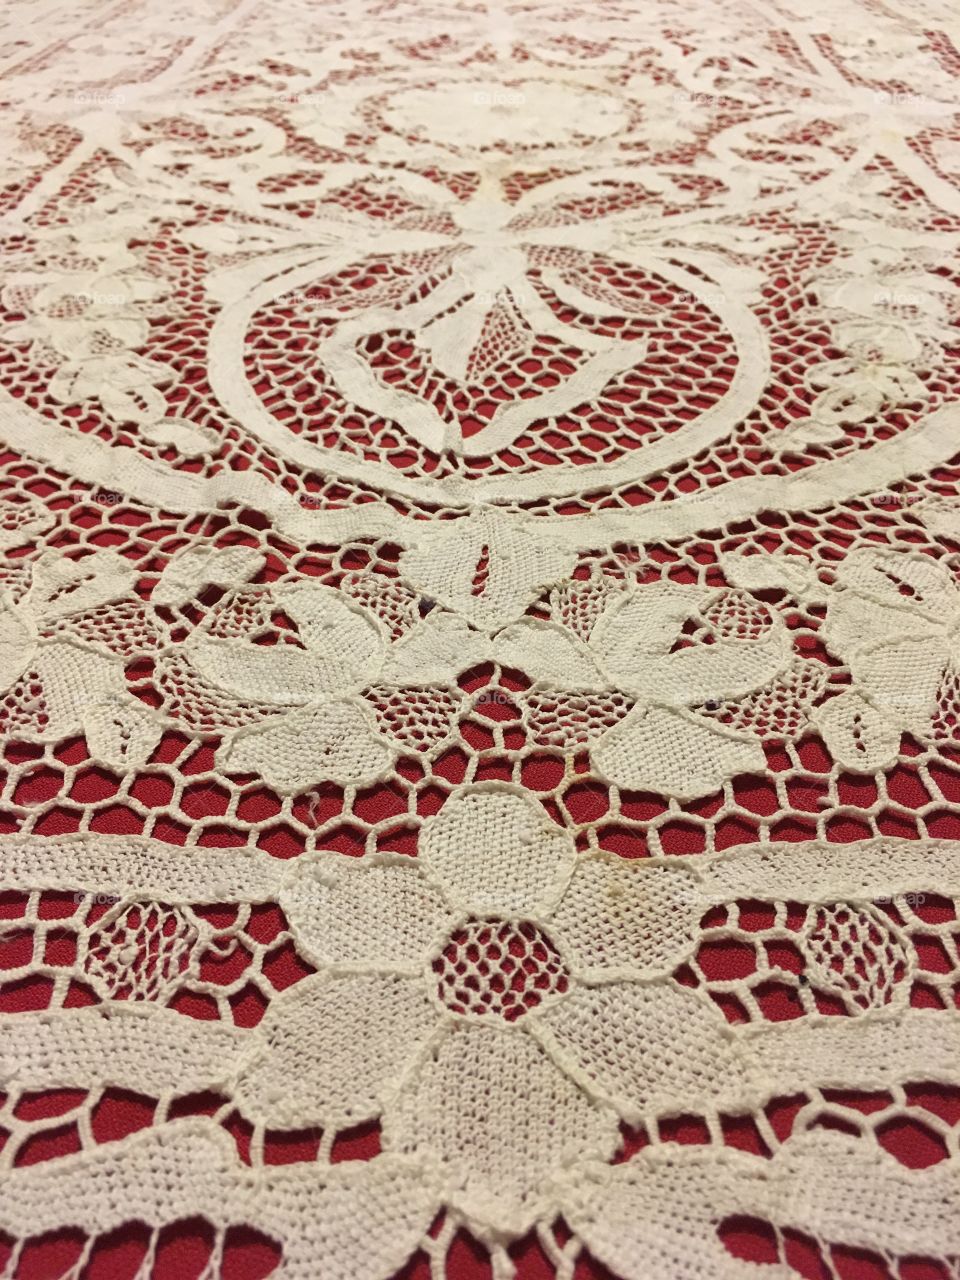 Vintage handmade lace